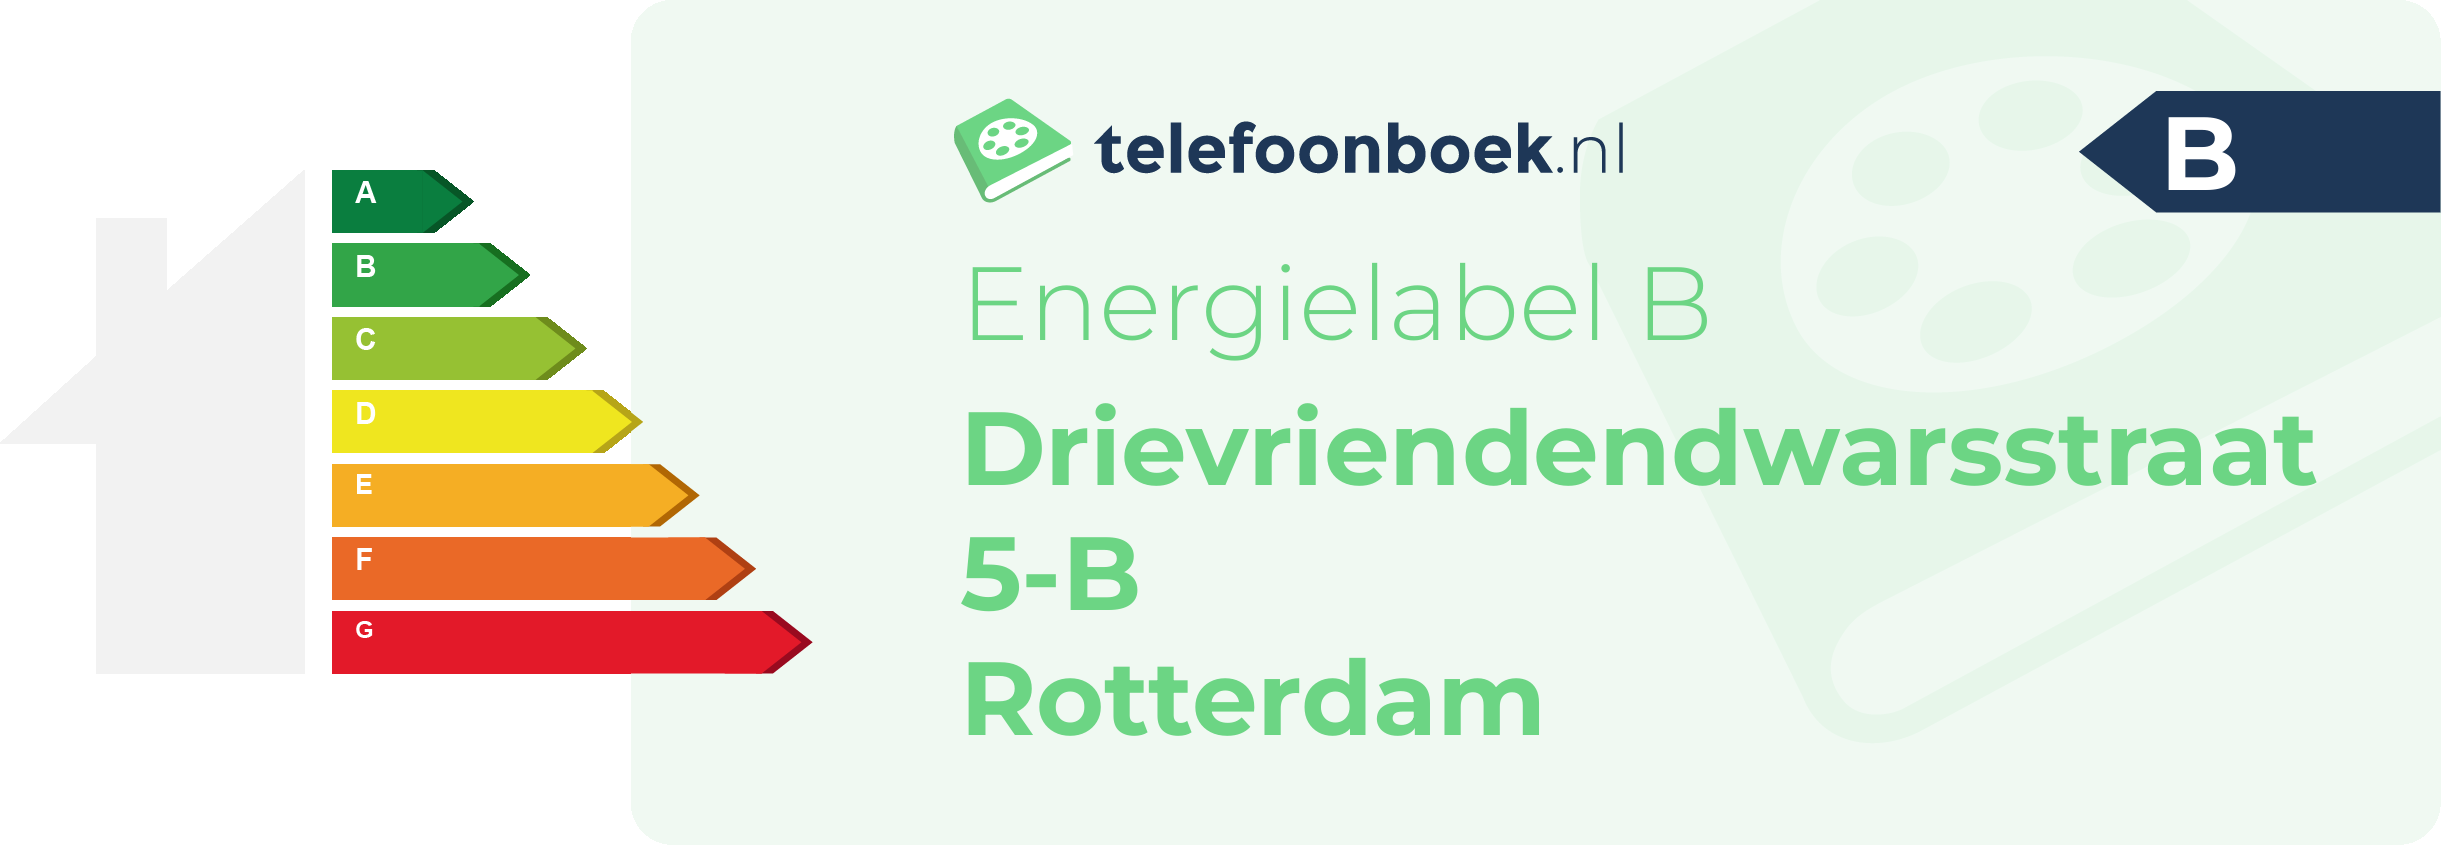 Energielabel Drievriendendwarsstraat 5-B Rotterdam